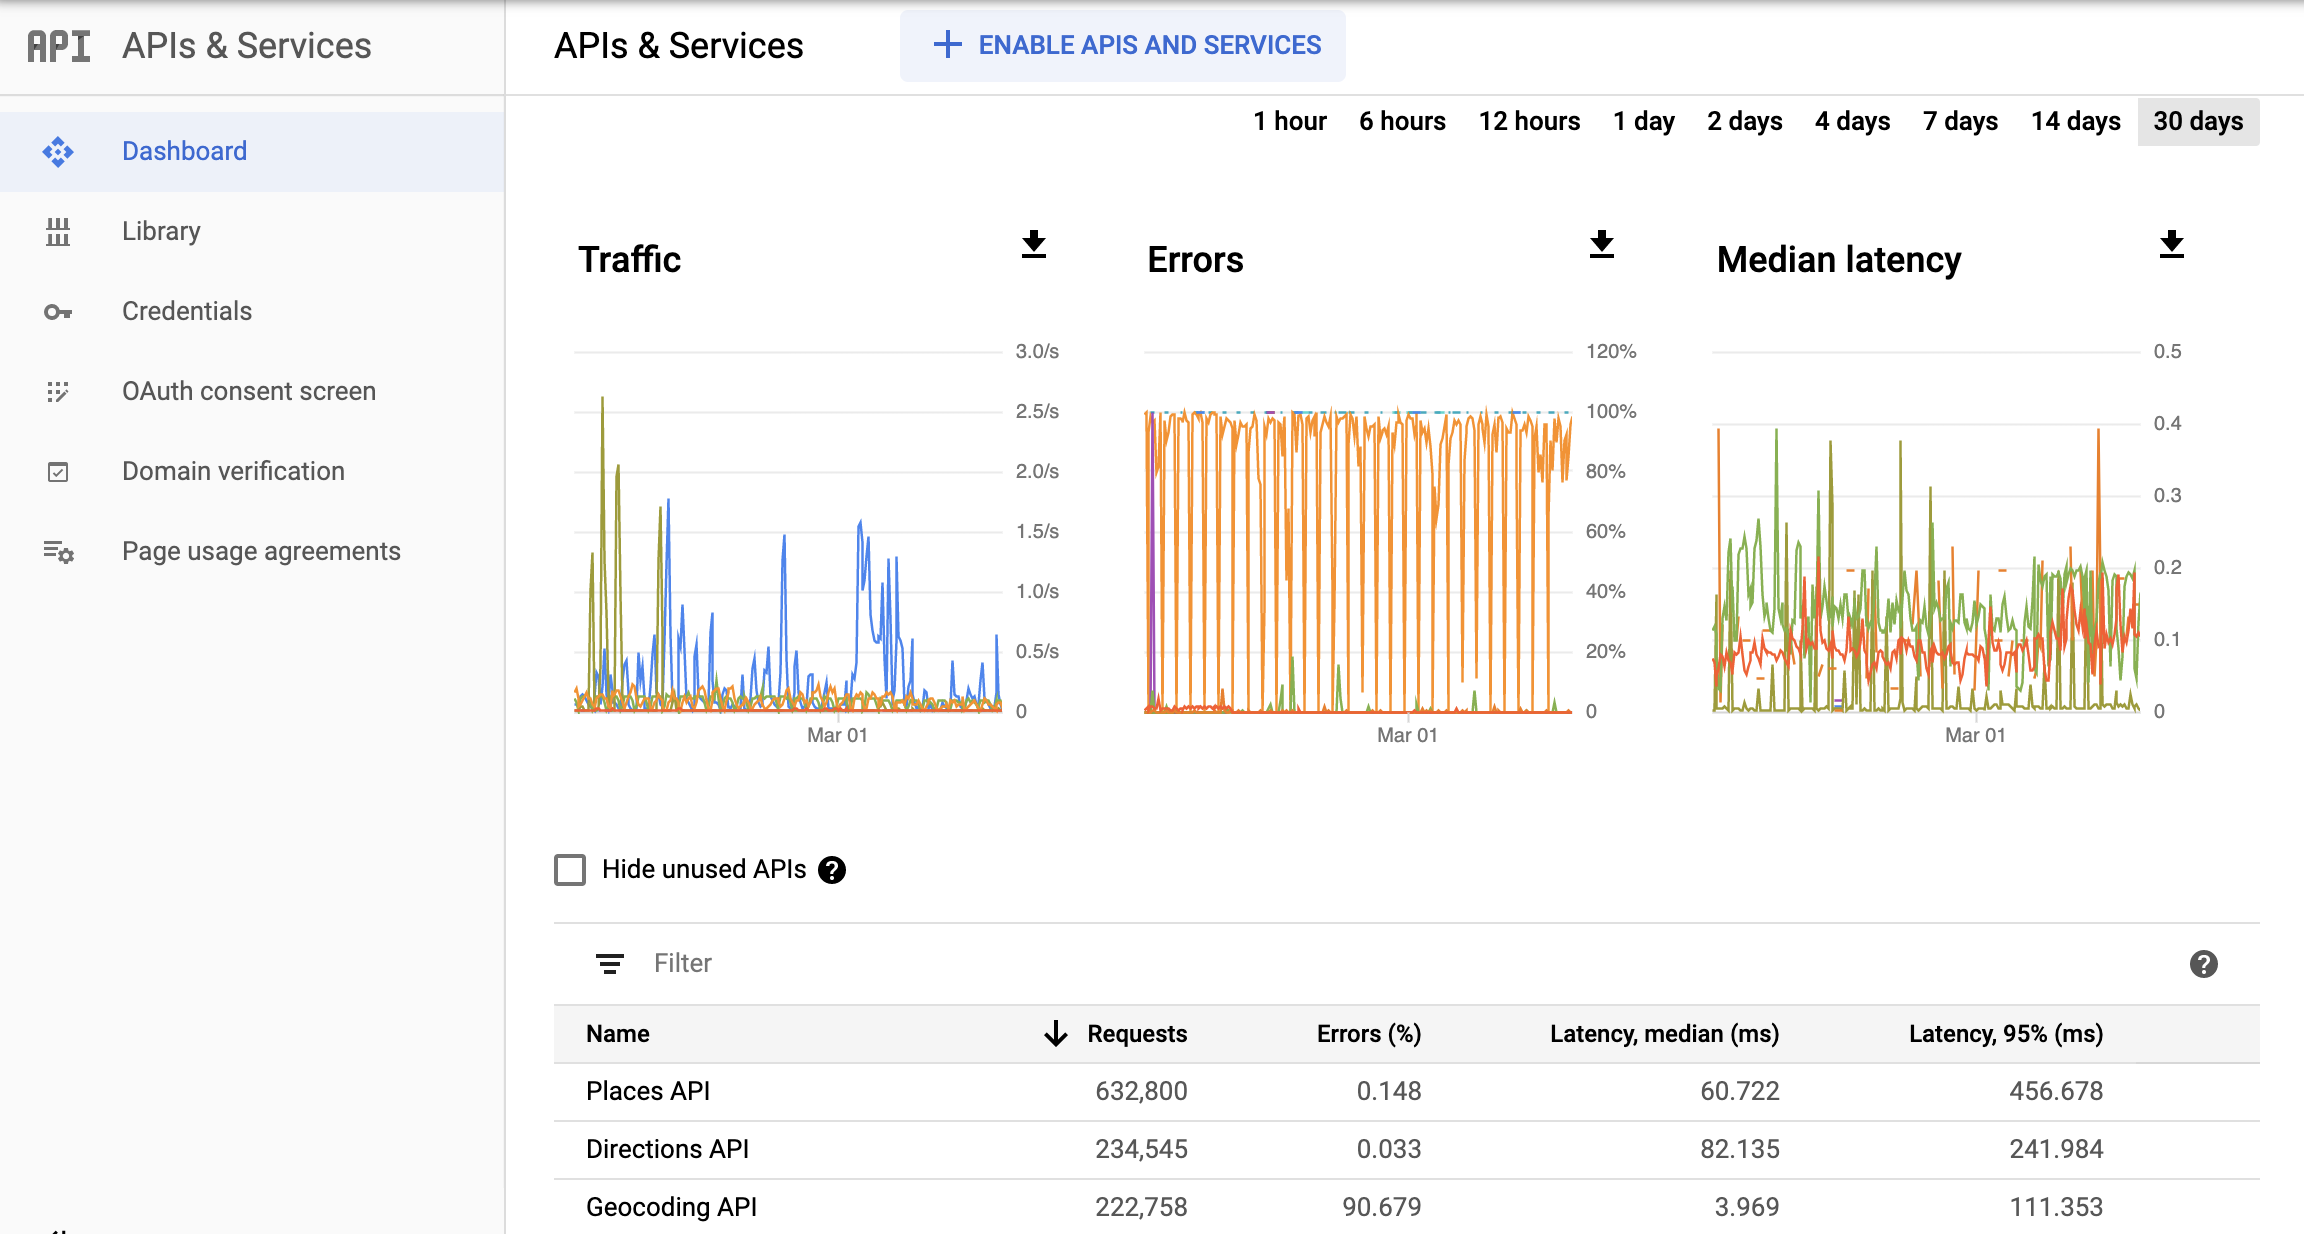 Captura de pantalla de la página APIs de Monitoring en la consola de Google Cloud, que muestra el panel de informes APIs y servicios (APIs & Services). Muestra gráficos separados de Tráfico (Traffic), Errores (Errors) y Mediana de latencia (Median Latency). Estos gráficos pueden mostrar los datos correspondientes a períodos de entre una hora y 30 días.